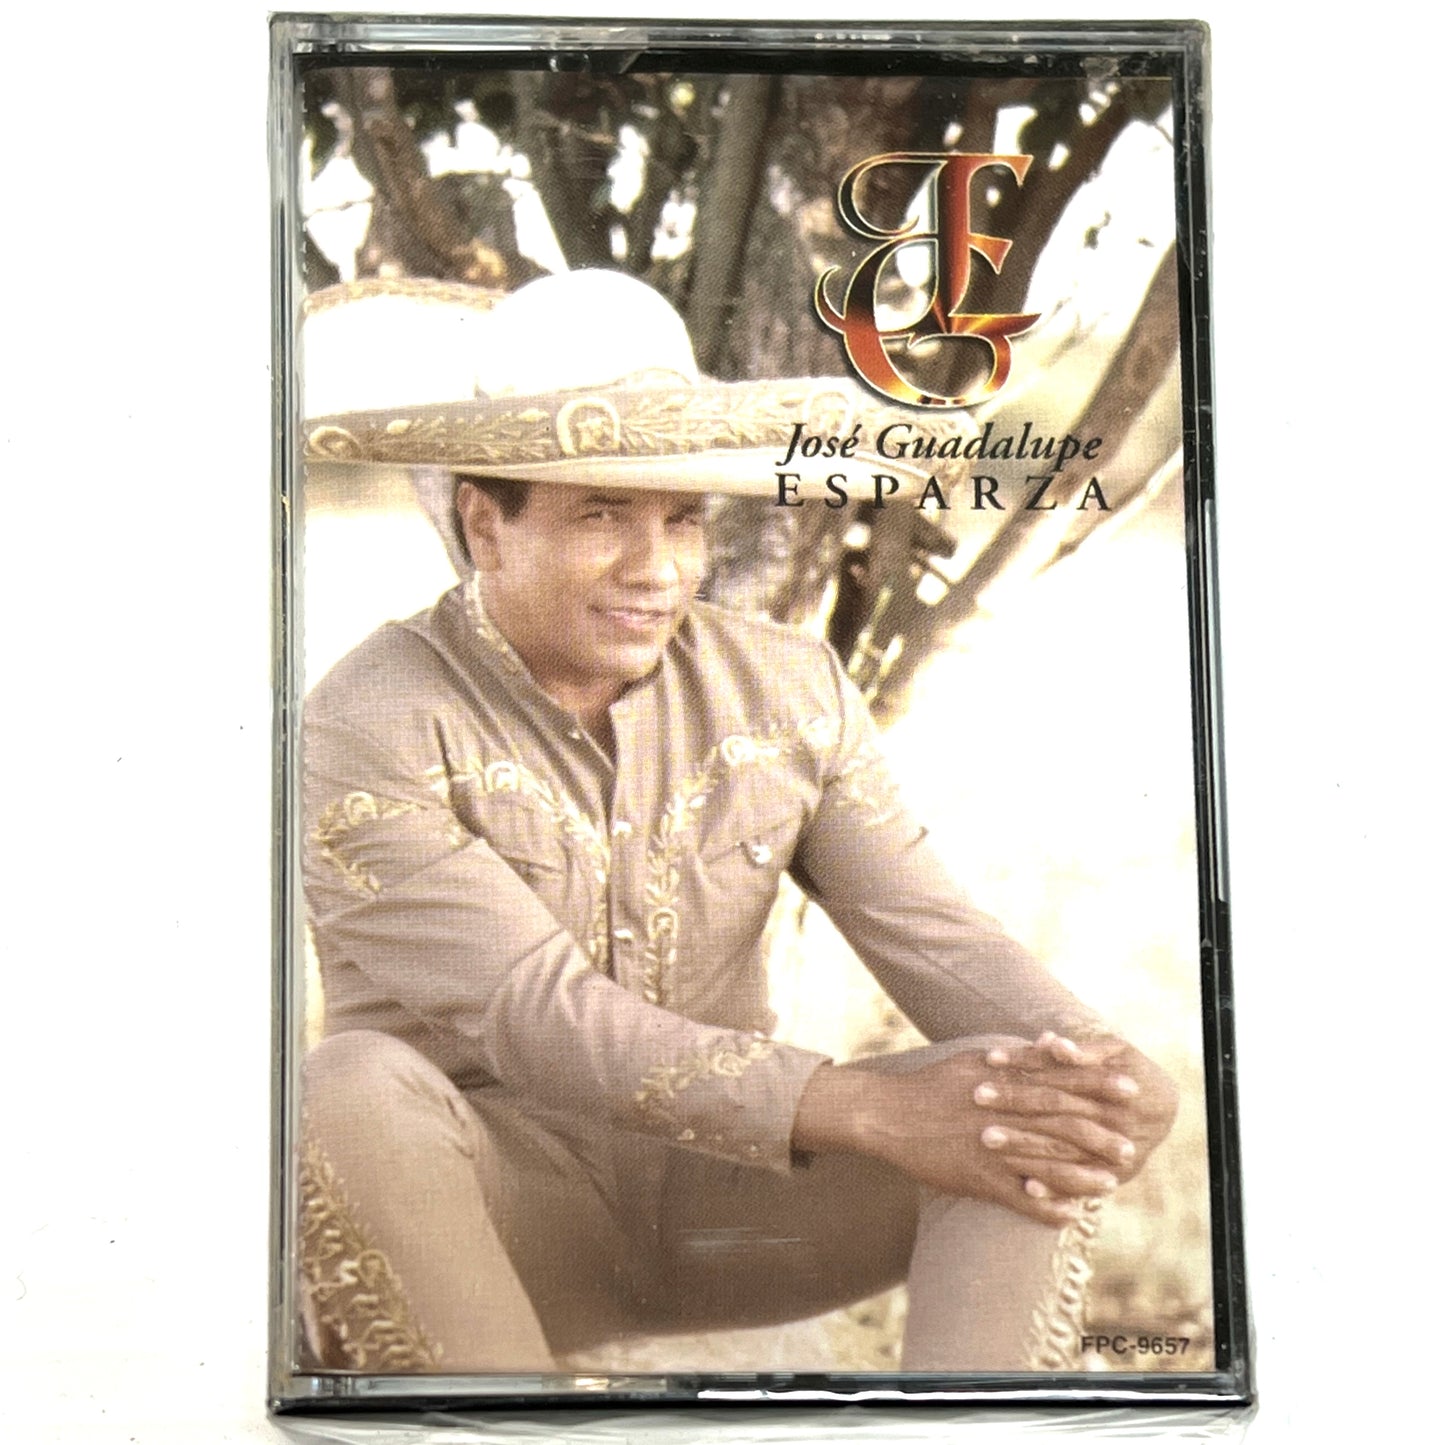 Jose Guadalupe Esparza - Jose Guadalupe Esparza (Cassette)